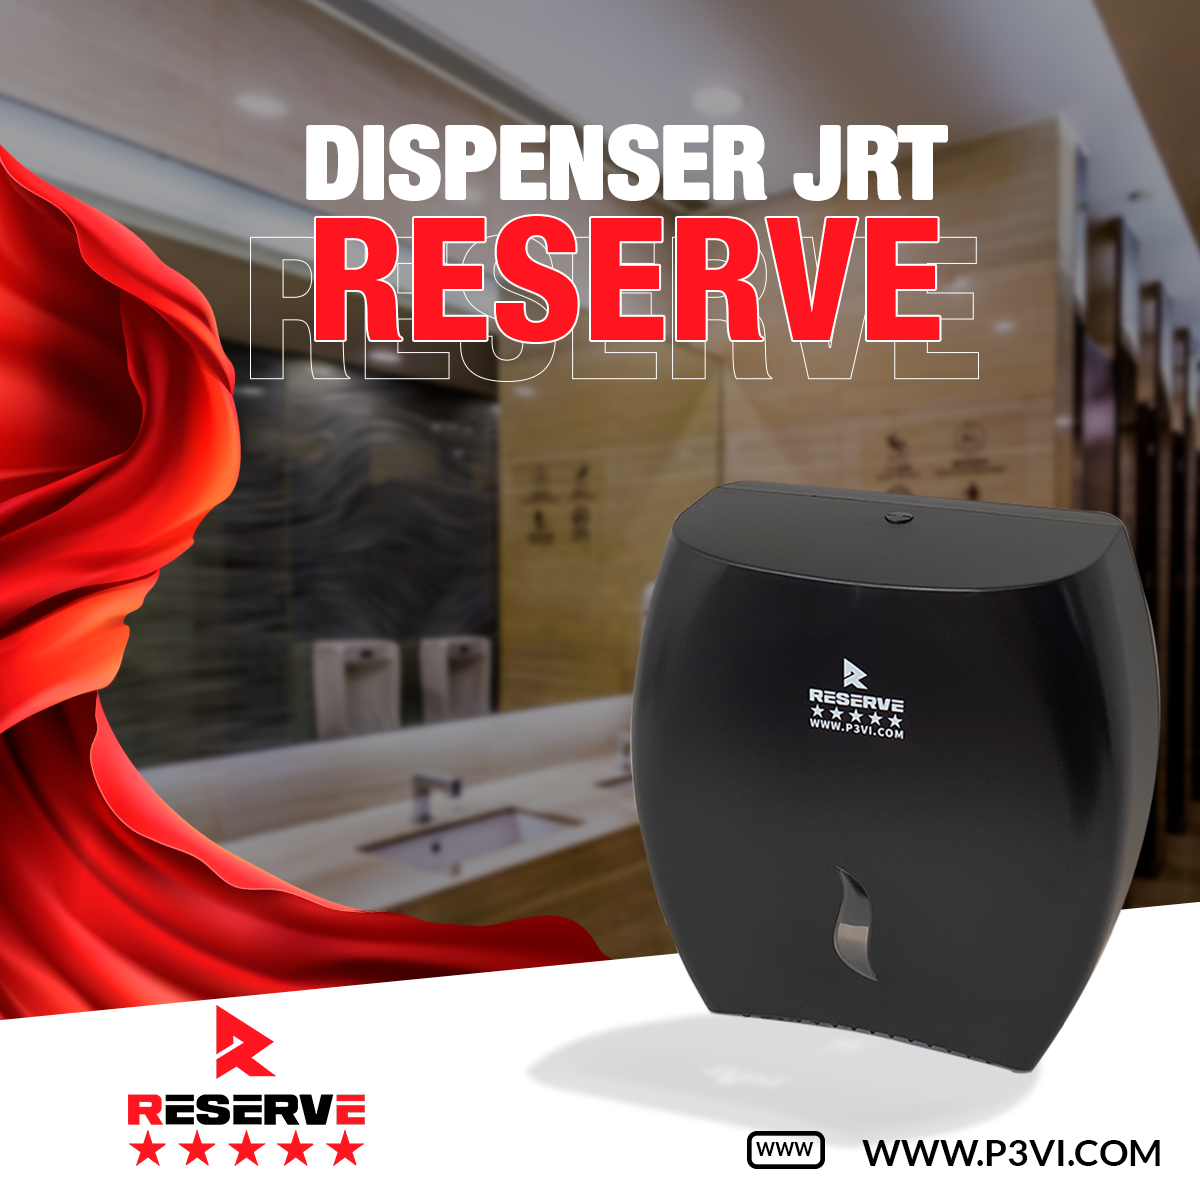 Dispenser JRT Reserve